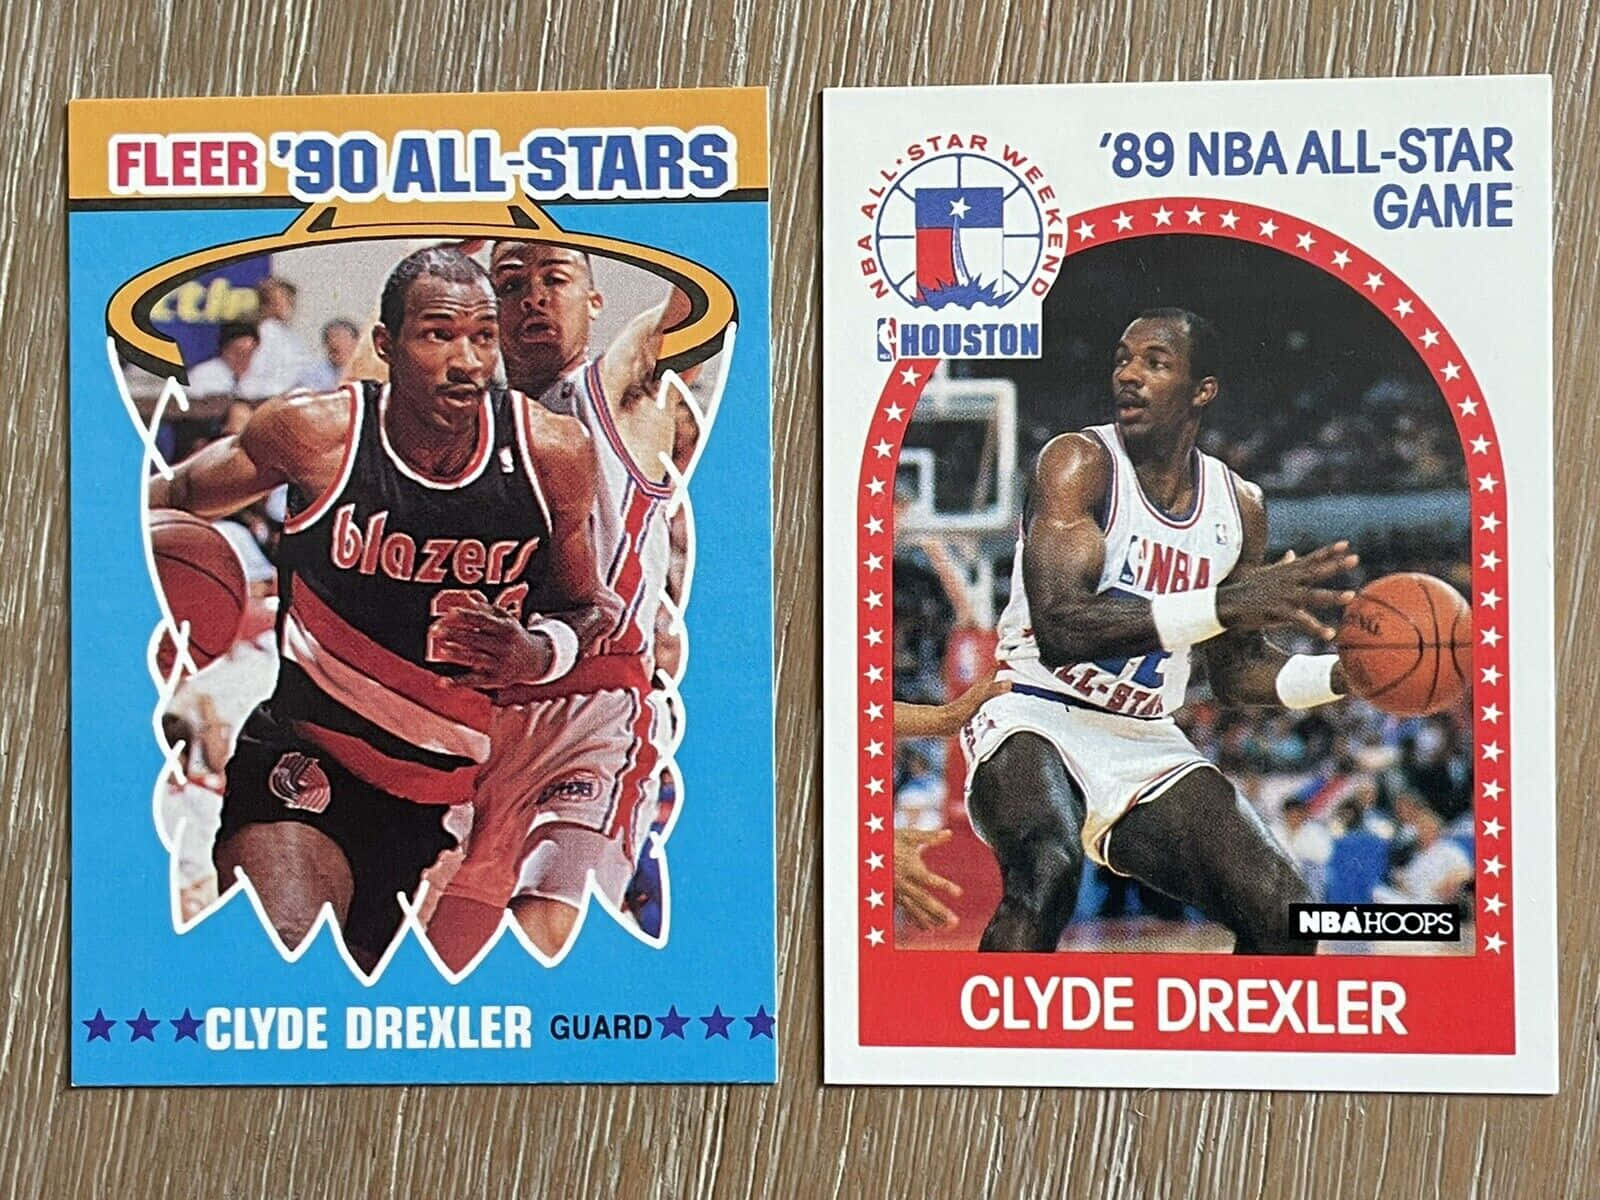 Clydedrexler 1989 1990s Nba All Star Game In Italian: Partita Delle Stelle Nba Degli Anni '90 Con Clyde Drexler Del 1989. Sfondo